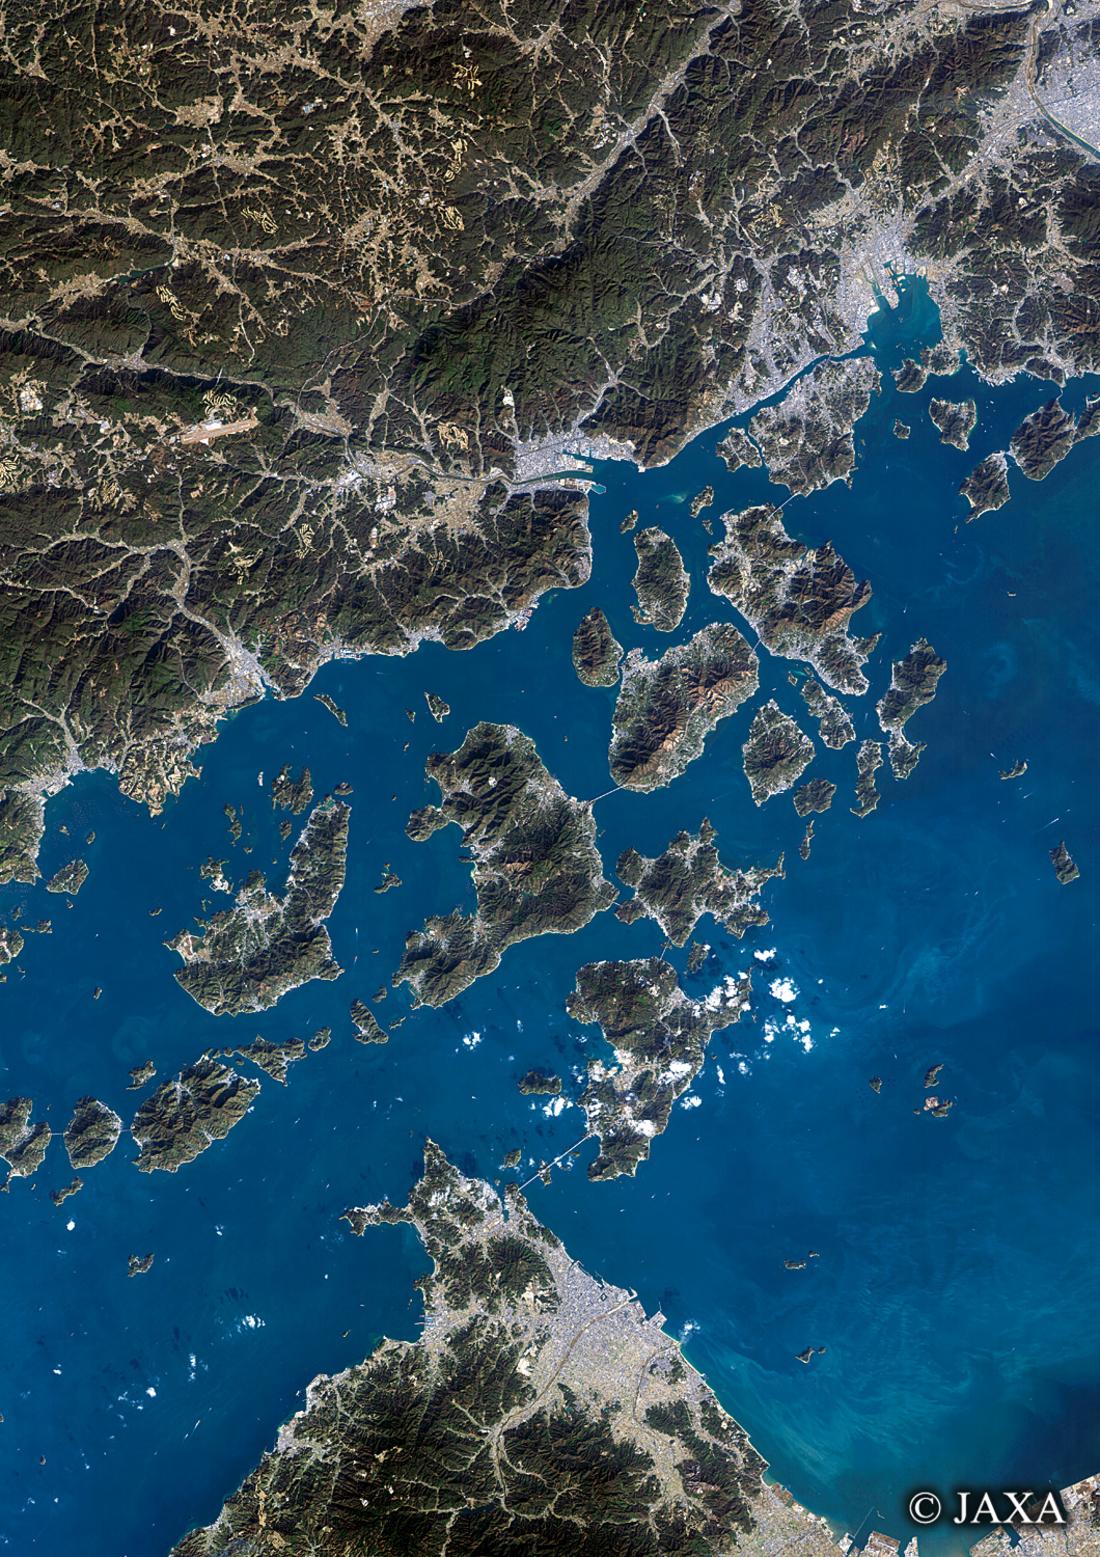 だいちから見た日本の都市 瀬戸内しまなみ海道:衛星画像